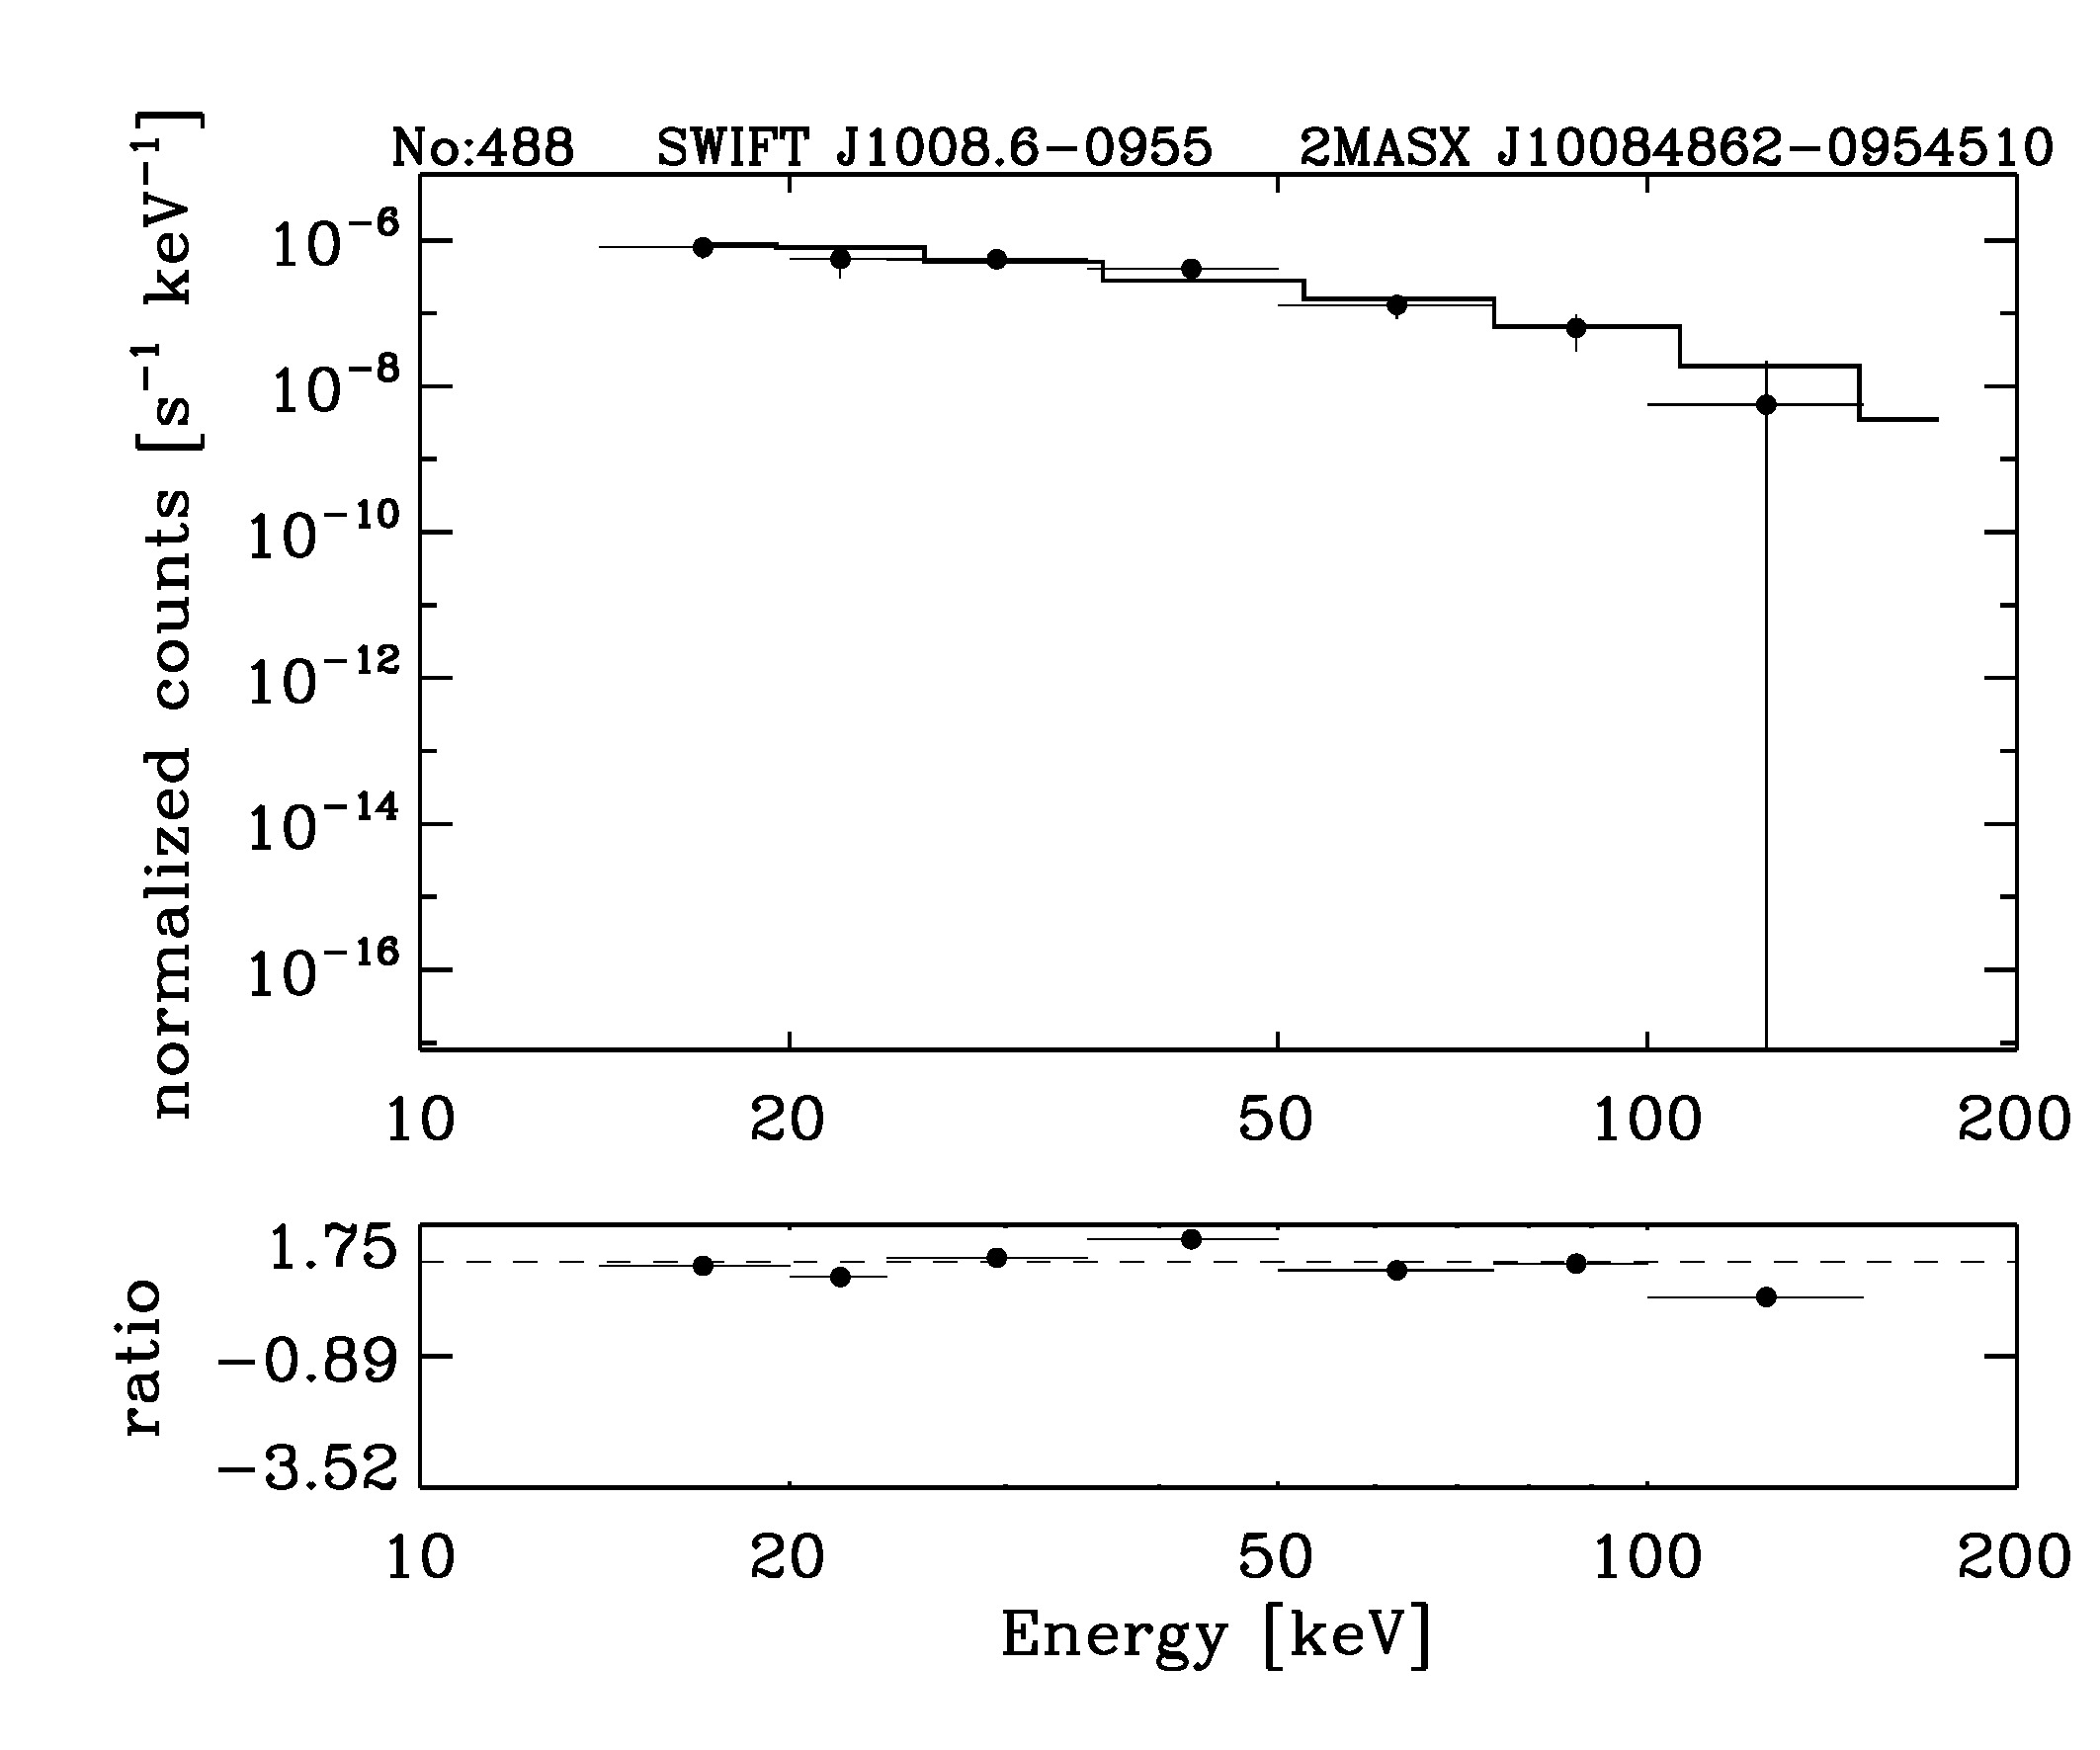 BAT Spectrum for SWIFT J1008.6-0955